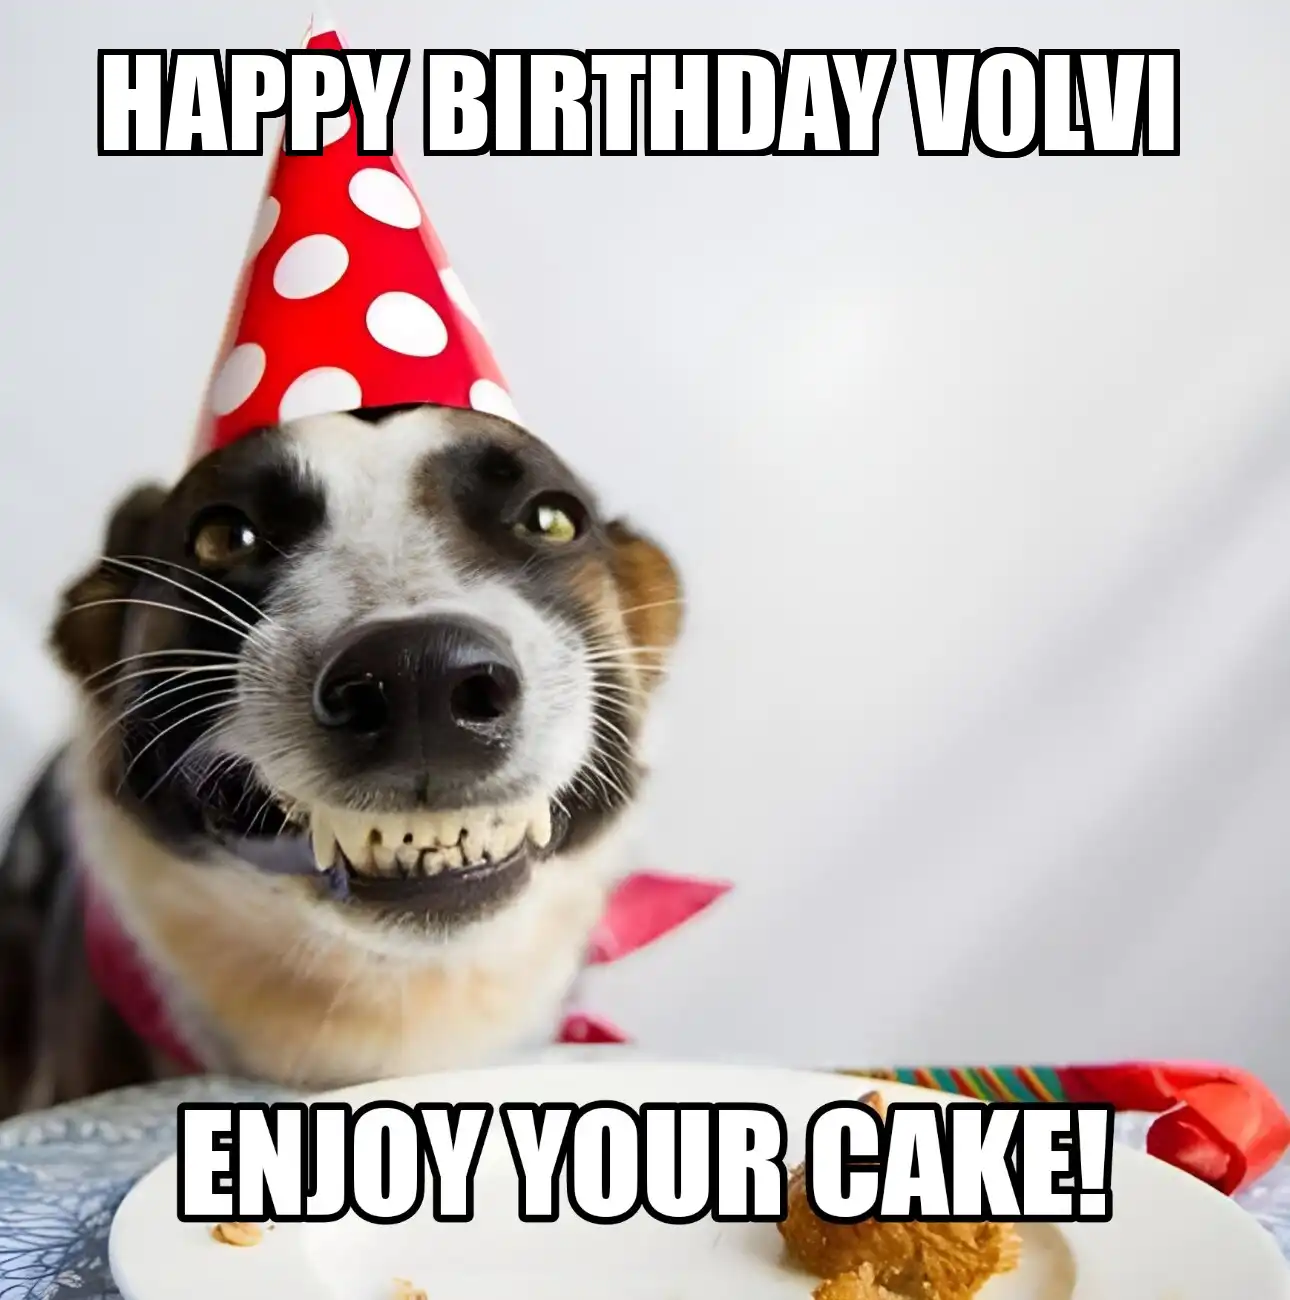 Happy Birthday Volvi Enjoy Your Cake Dog Meme